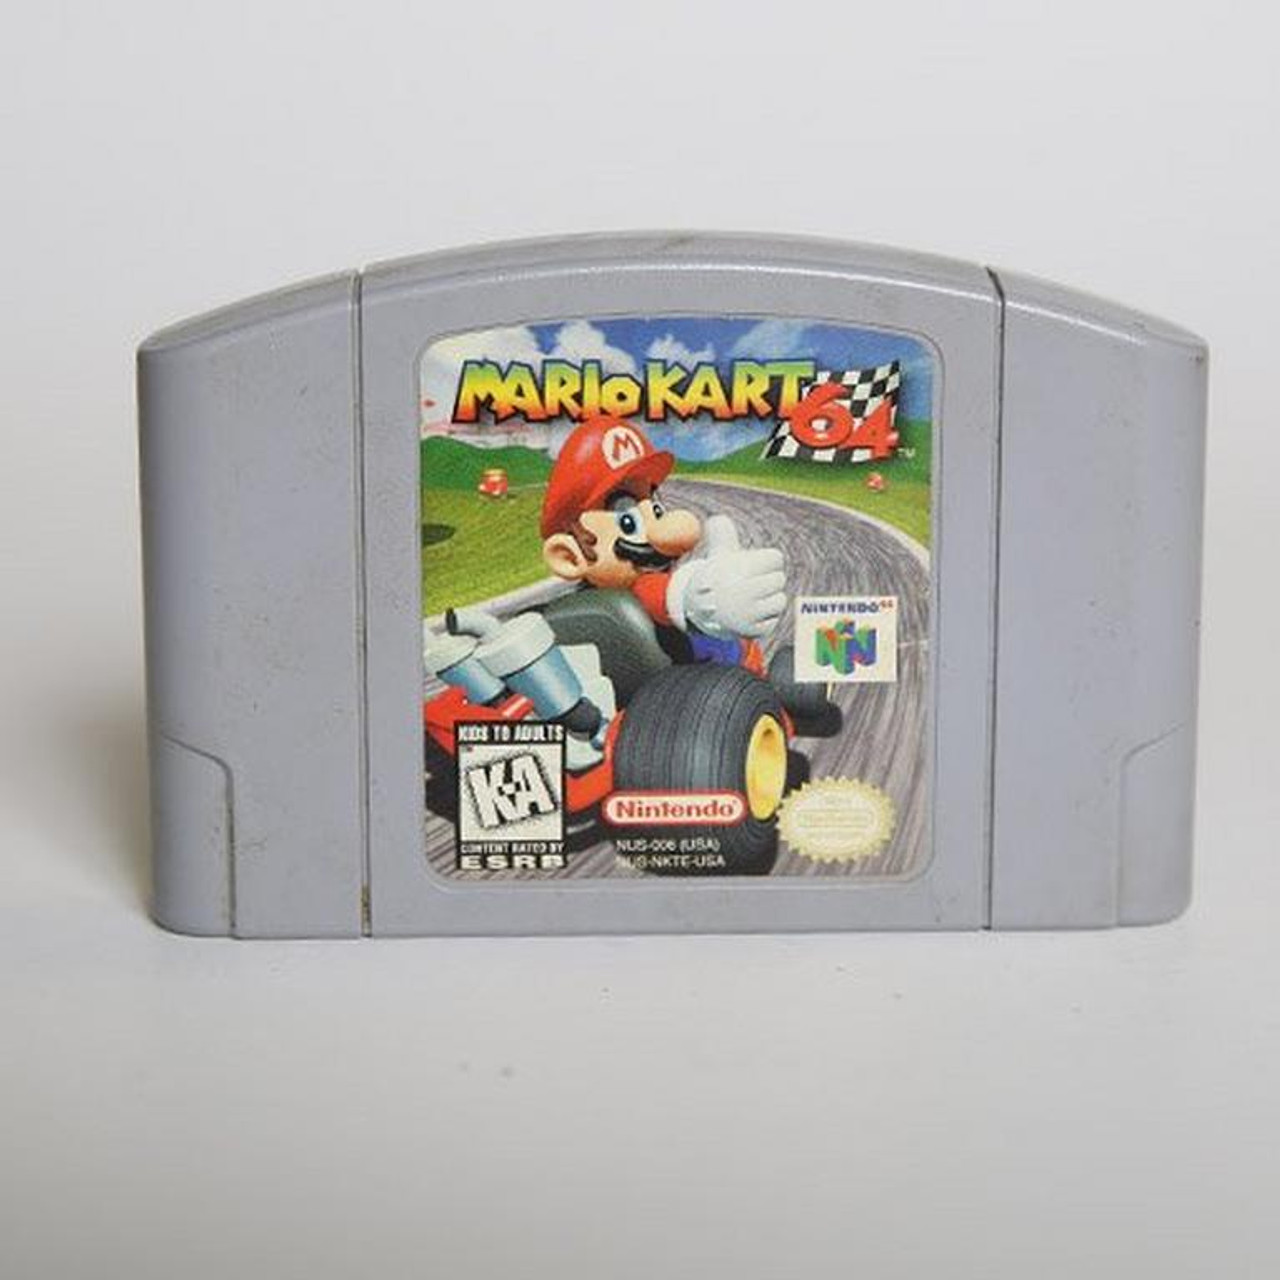 Frem stress Blinke Mario Kart 64 for Nintendo 64 is available at VideoGamesNewYork, NY